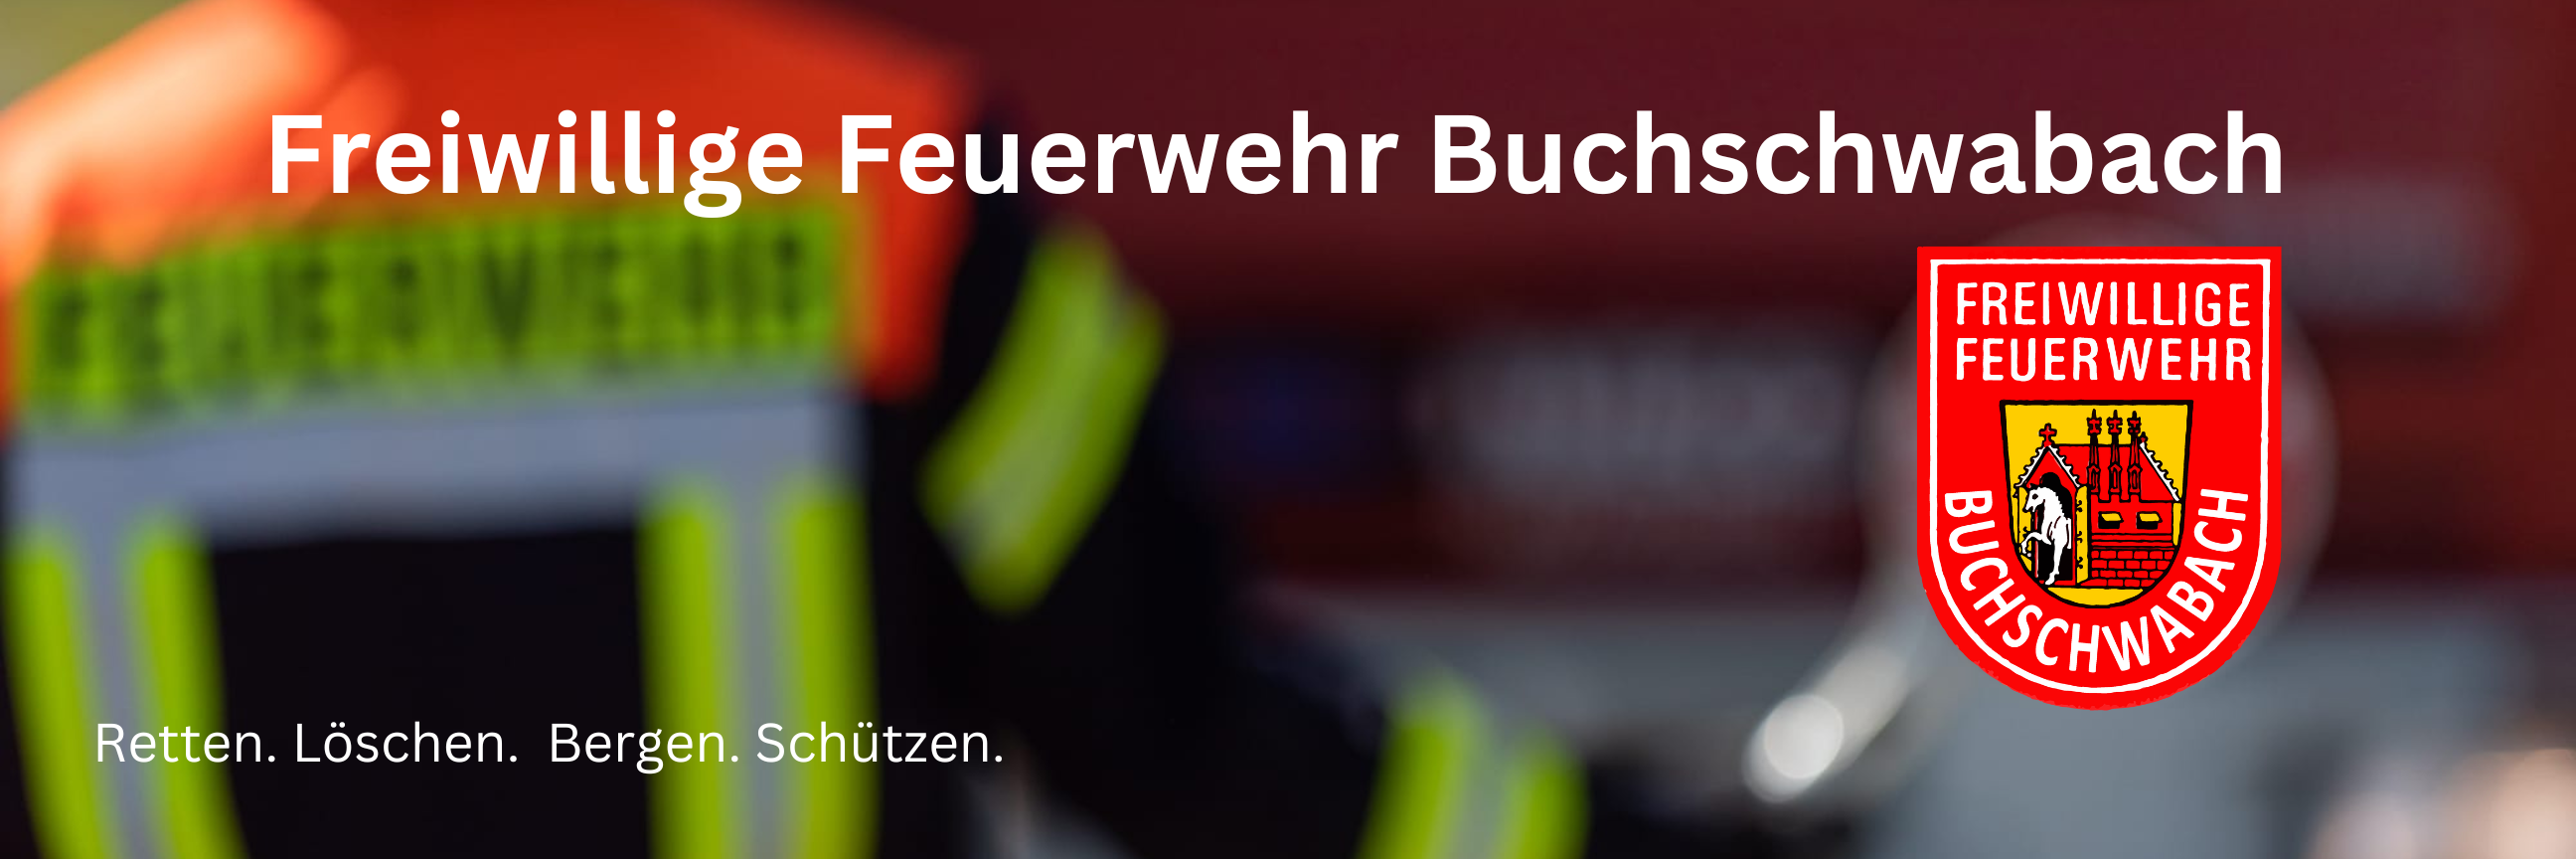 Freiwillige Feuerwehr Buchschwabach